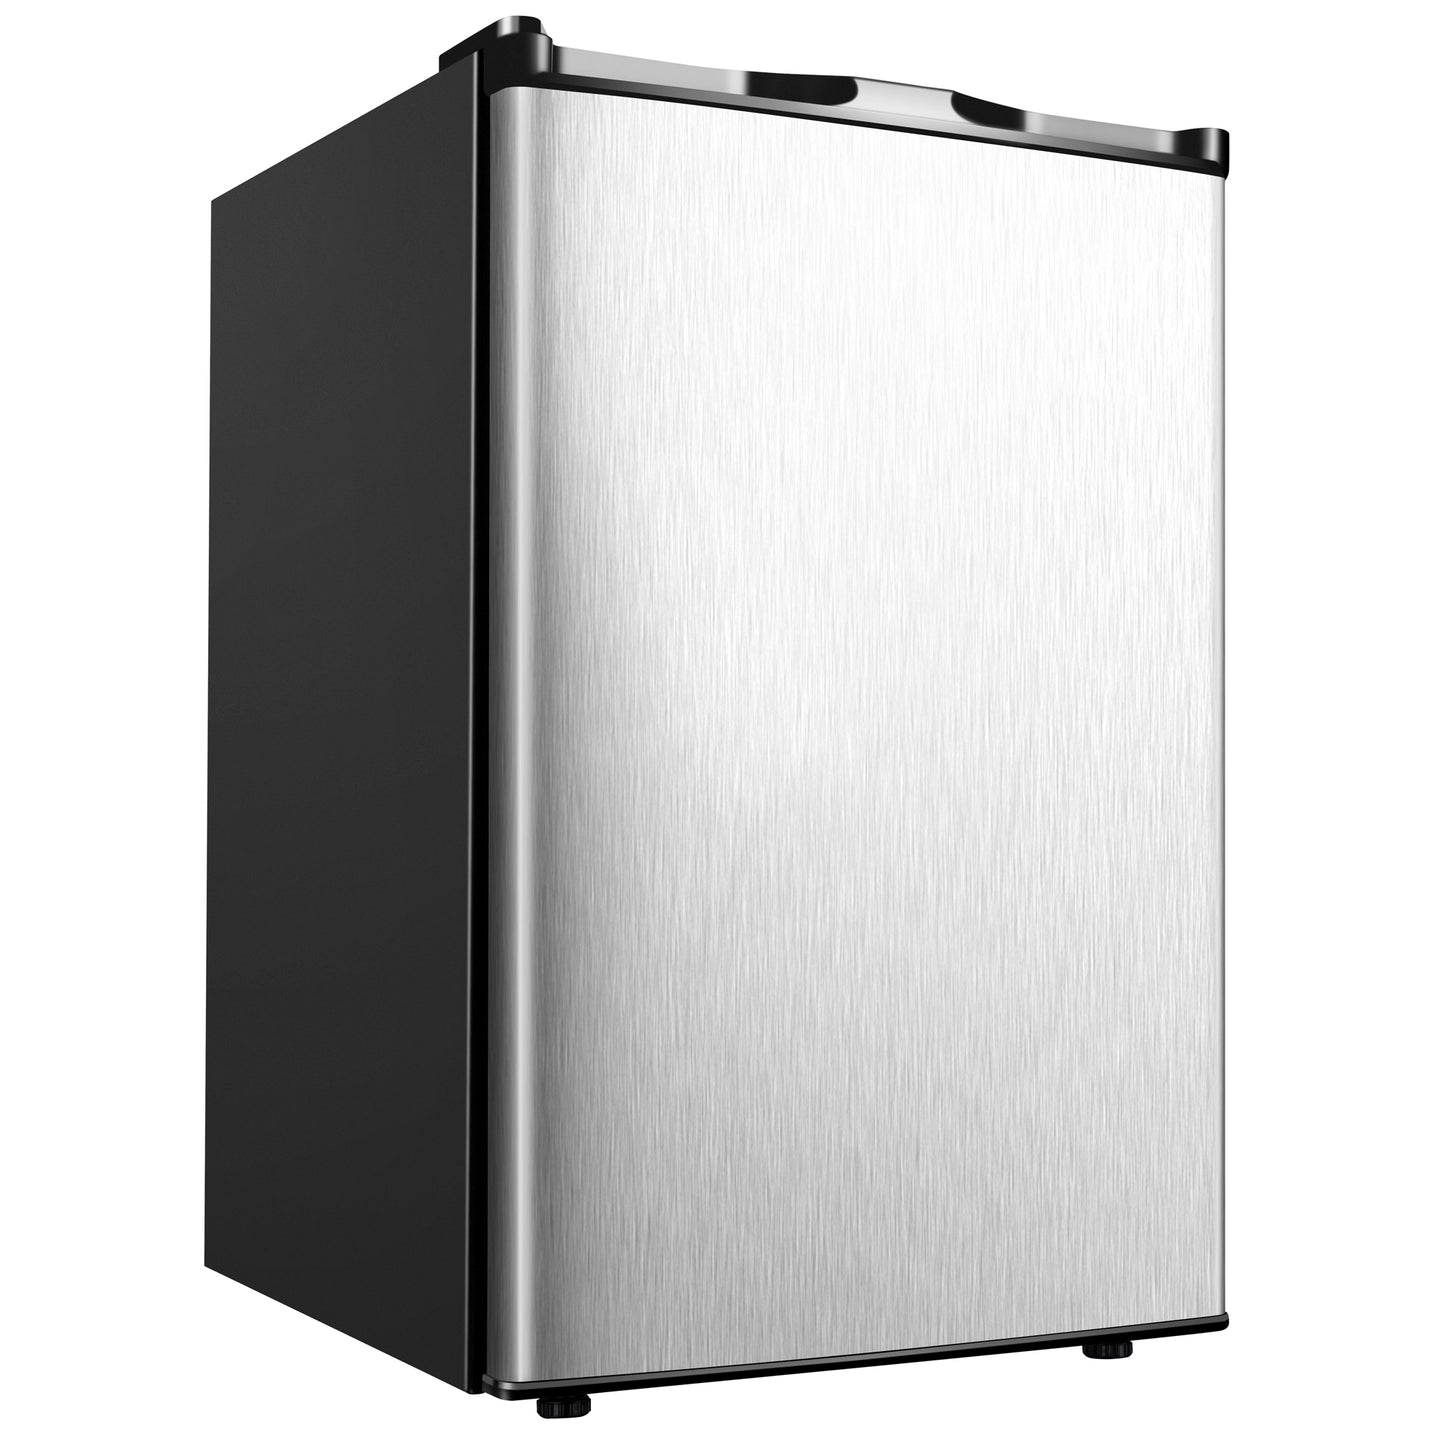 ICYGLEE 3.0 Cubic Feet Upright freezer, Single Door with Reversible Stainless Steel Door, Home/Dorms.